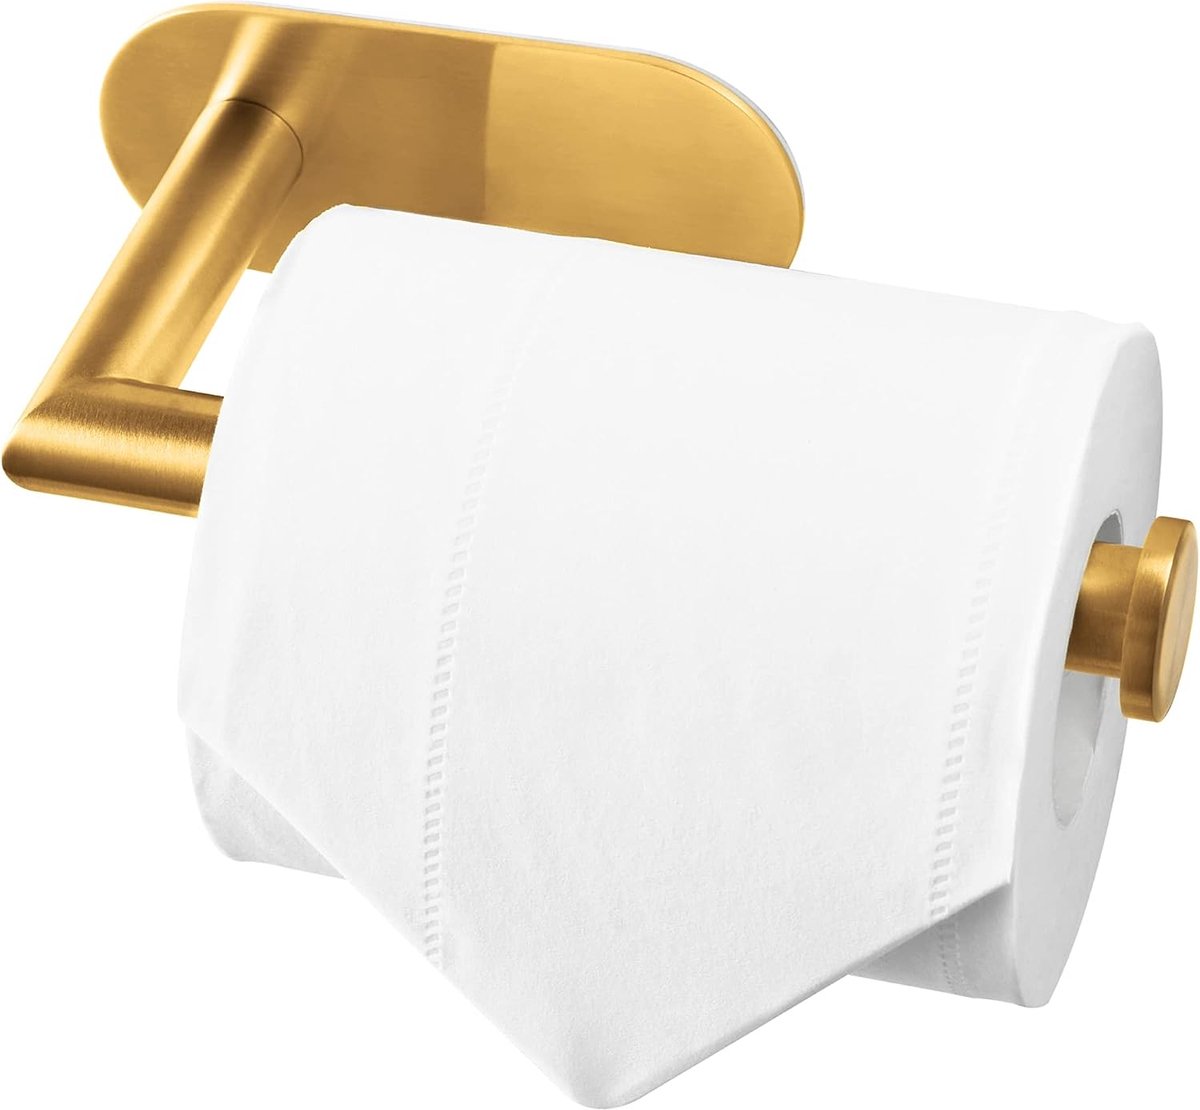 Toiletrolhouder RVS goud - Zonder boren - Voor wc of badkamer - Roestvrij staal